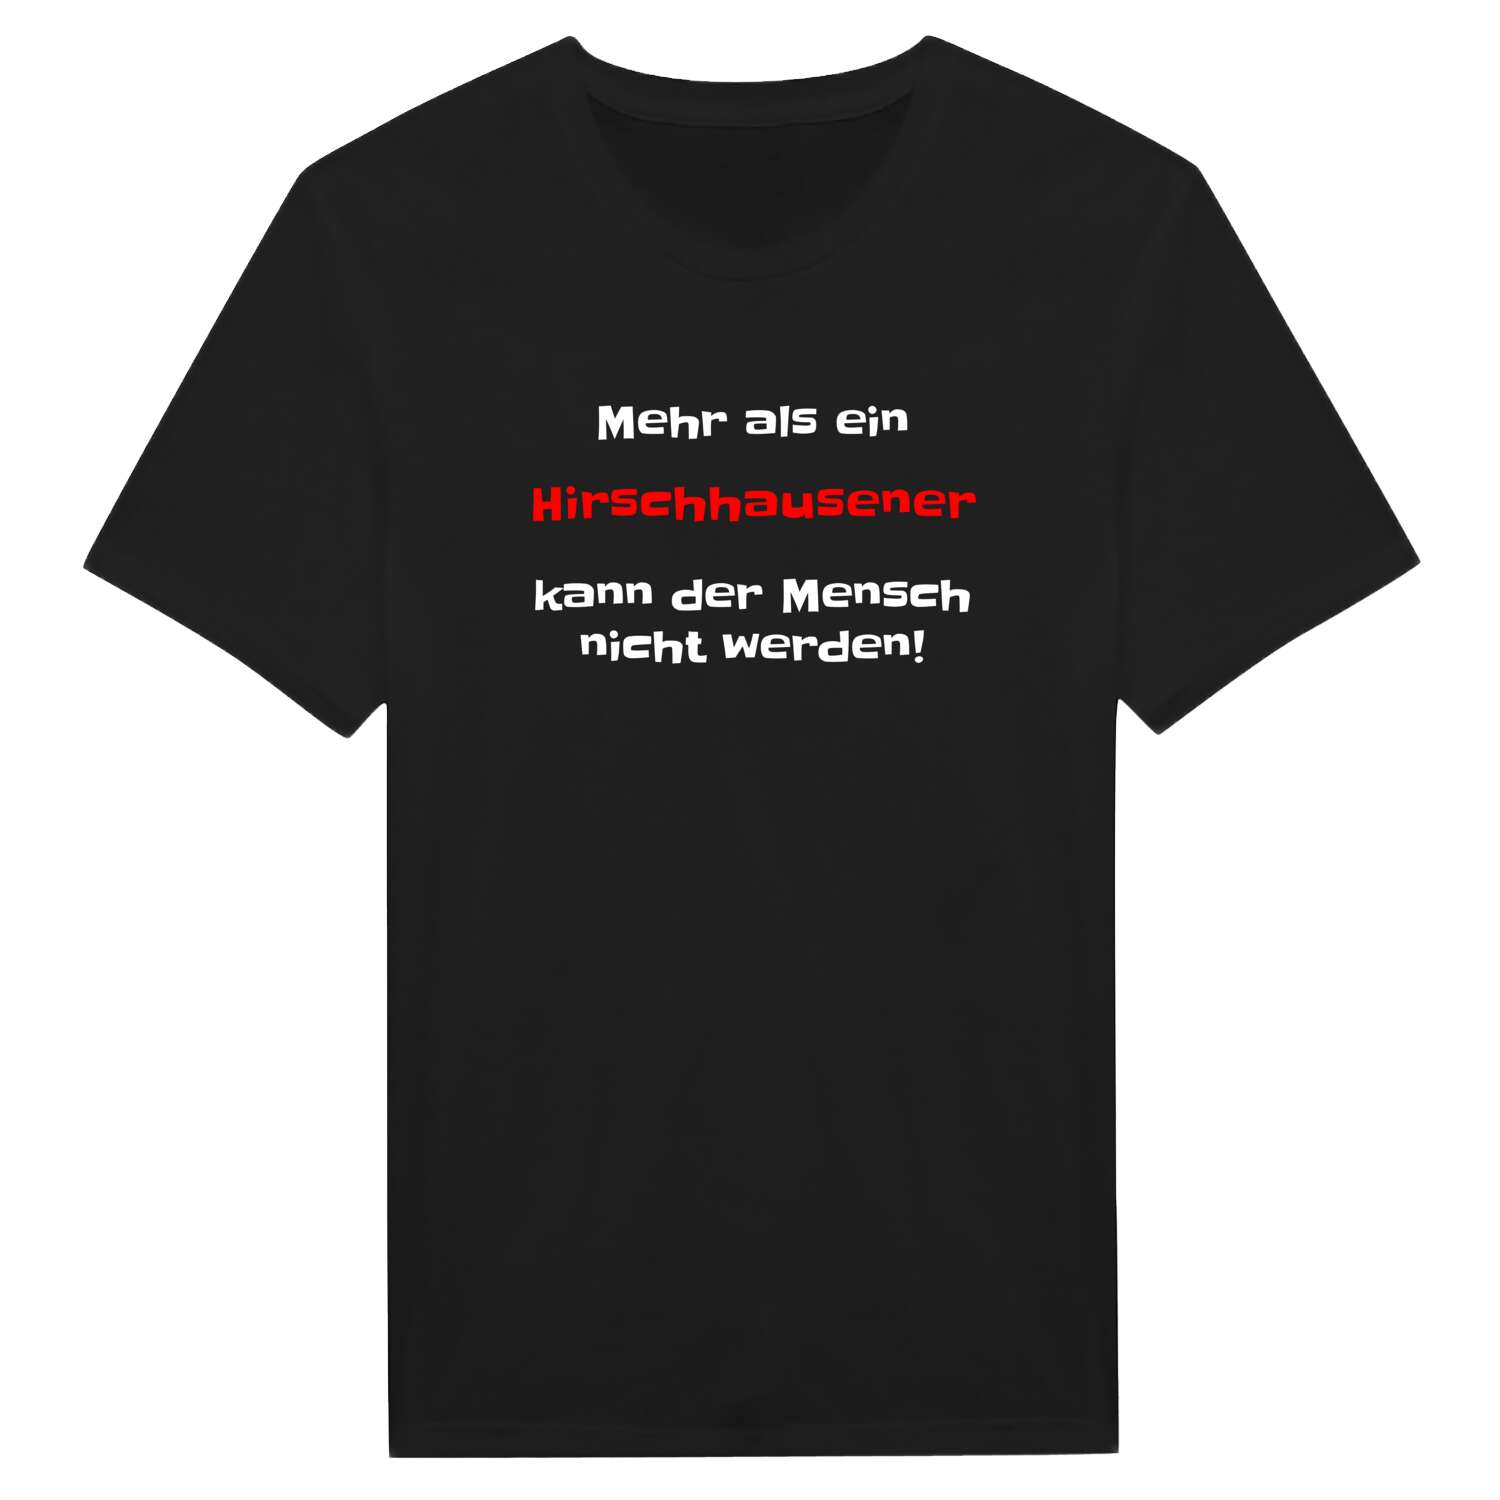 Hirschhausen T-Shirt »Mehr als ein«